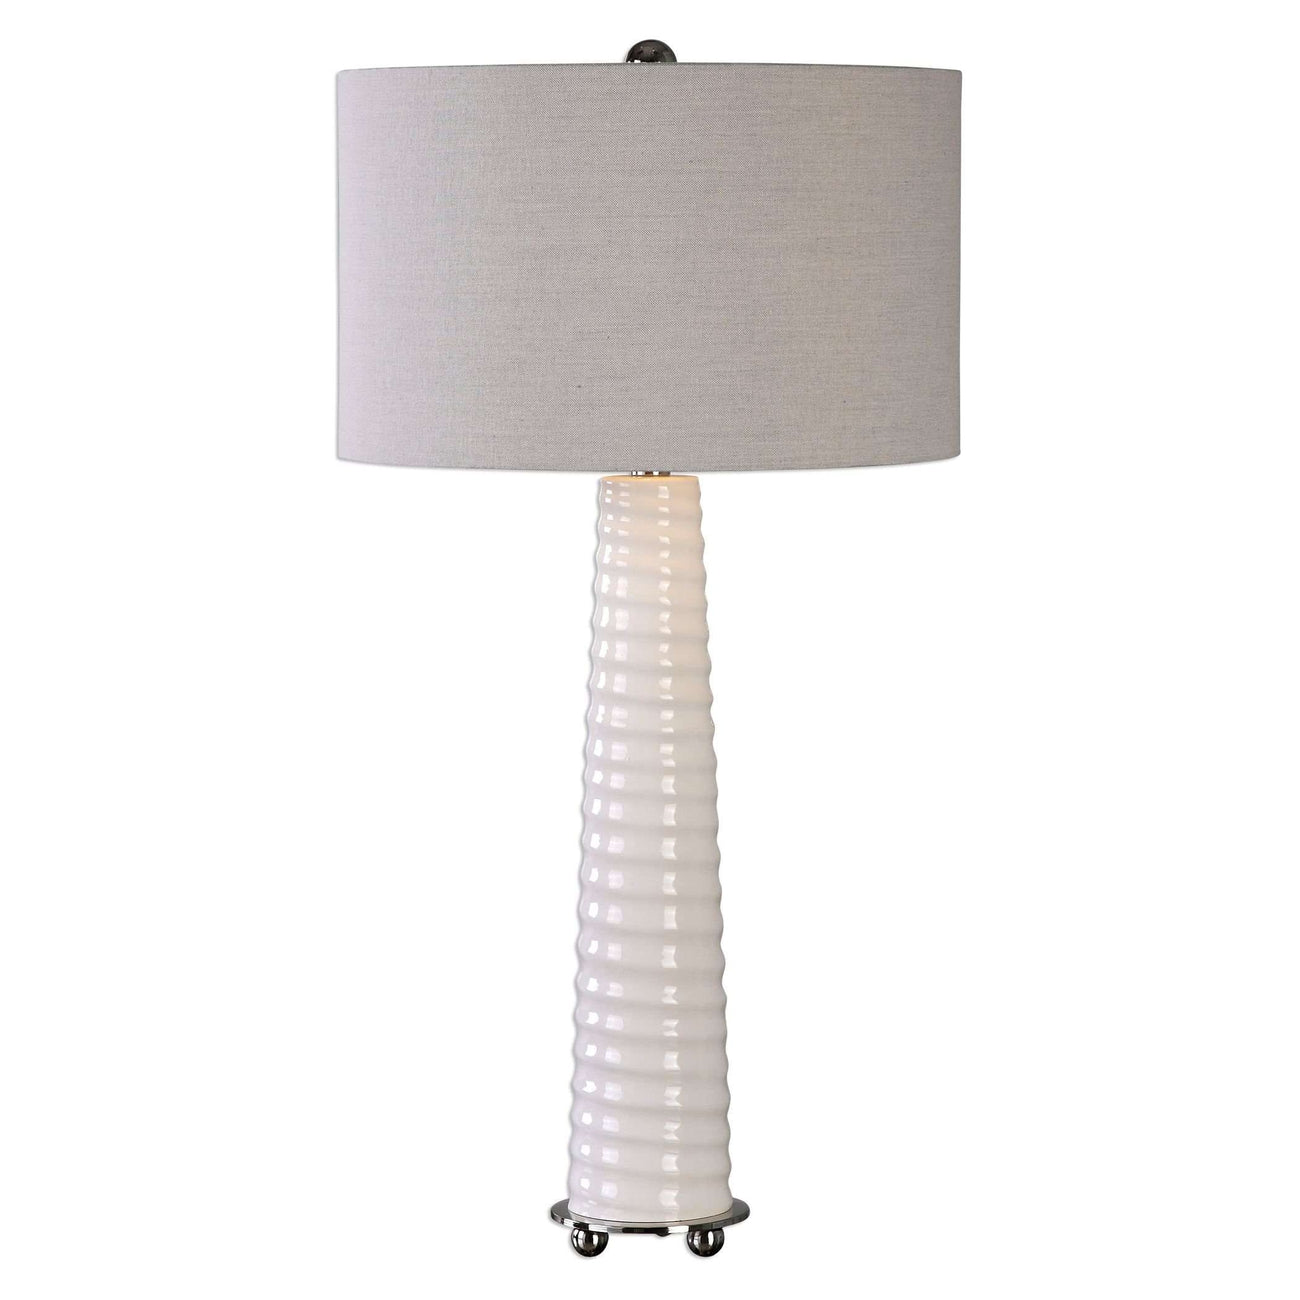 Mavone Gloss White Table Lamp-Uttermost-UTTM-27135-1-Table Lamps-1-France and Son